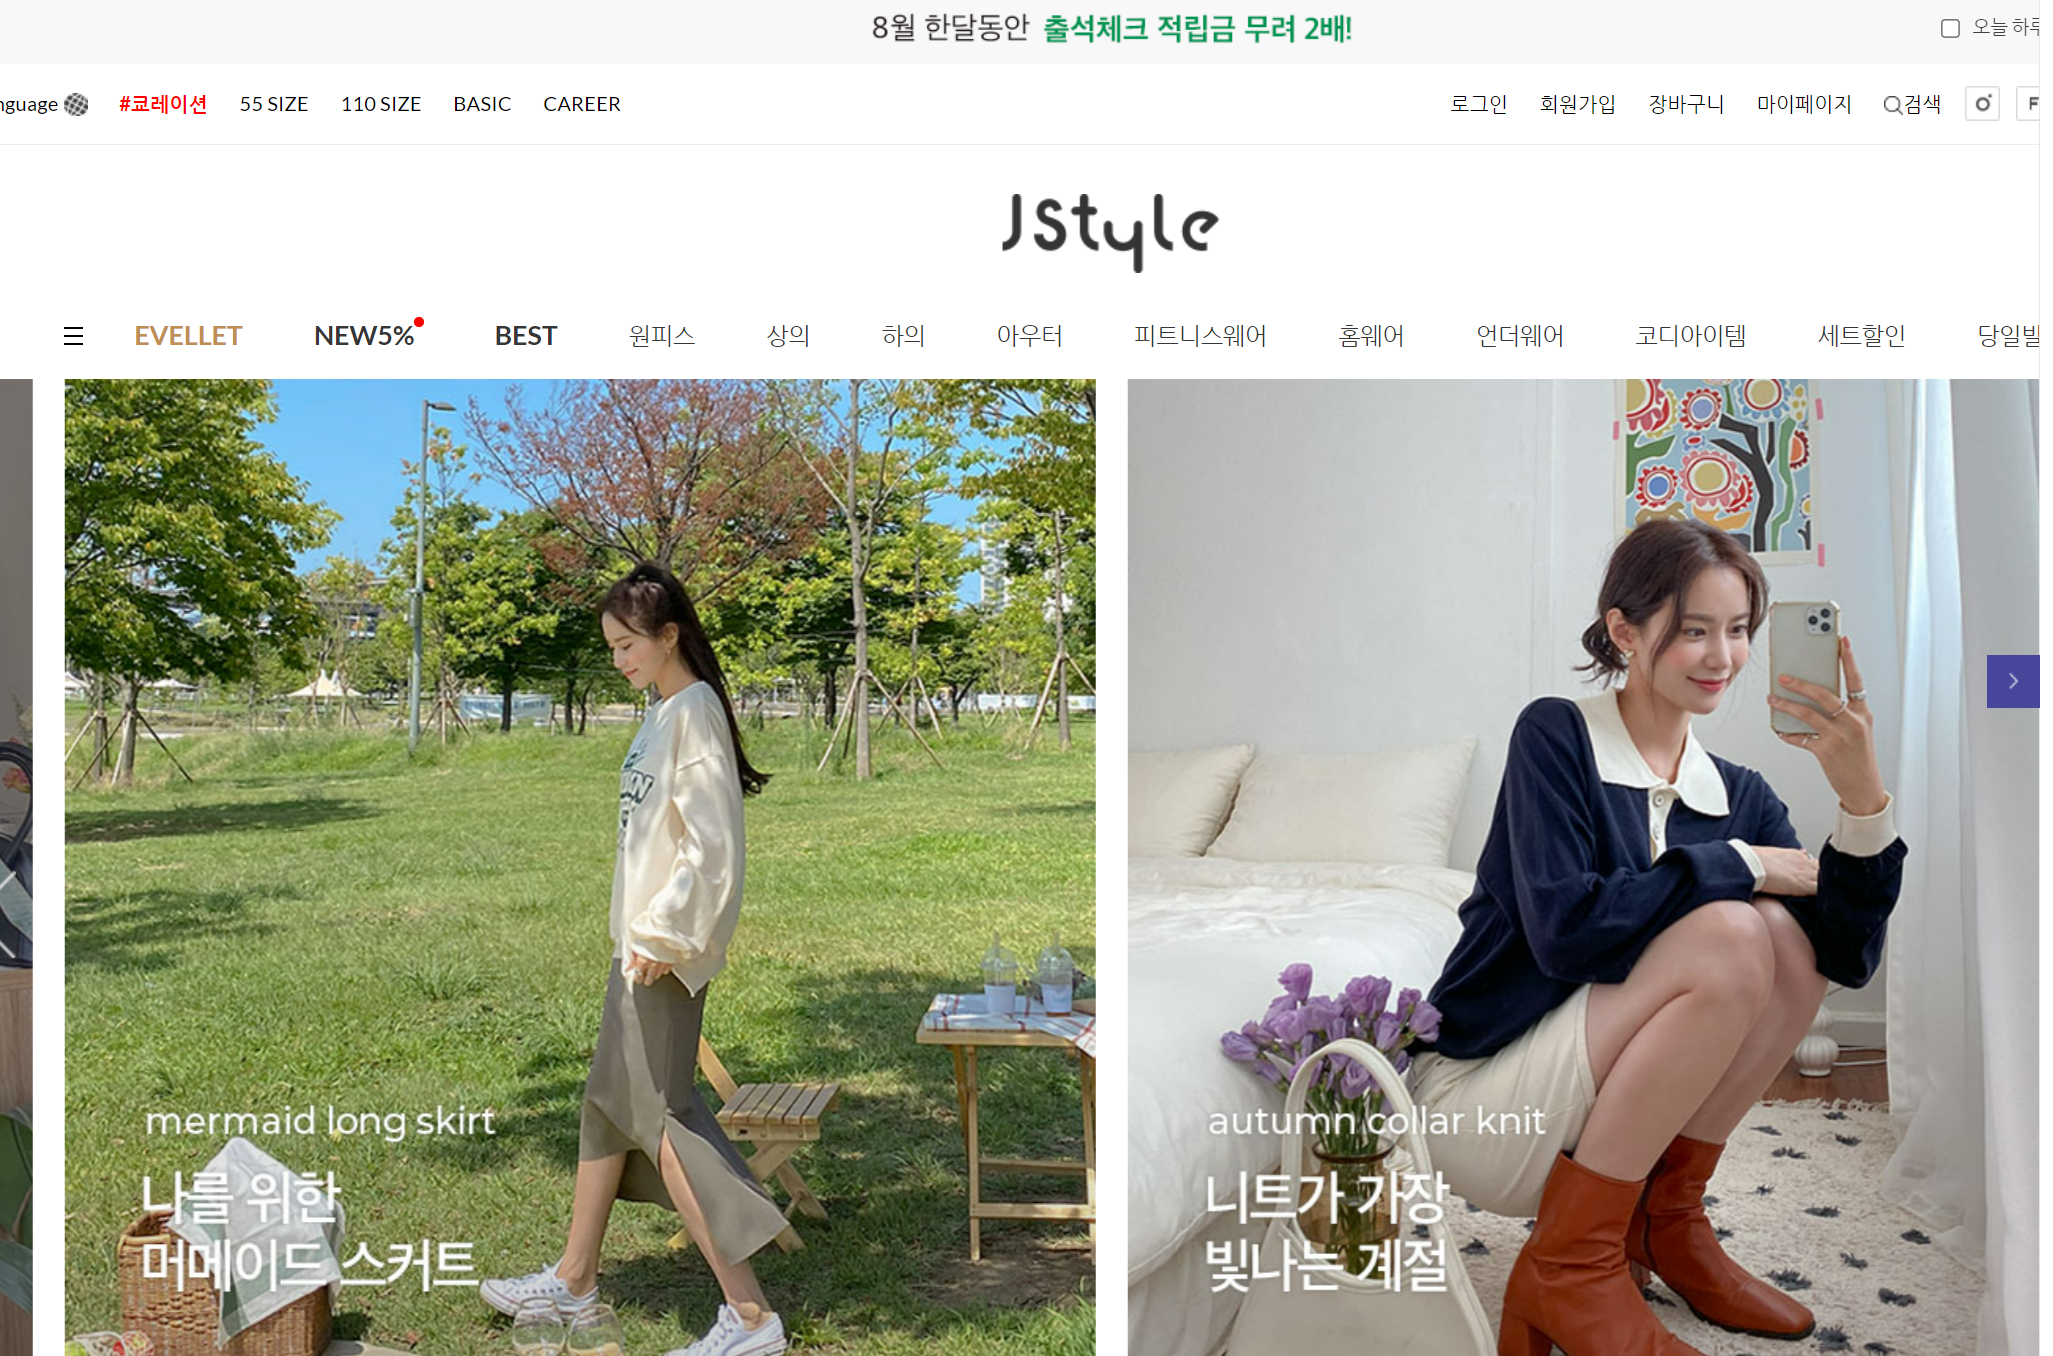 jstyle - shop korea women's fashion